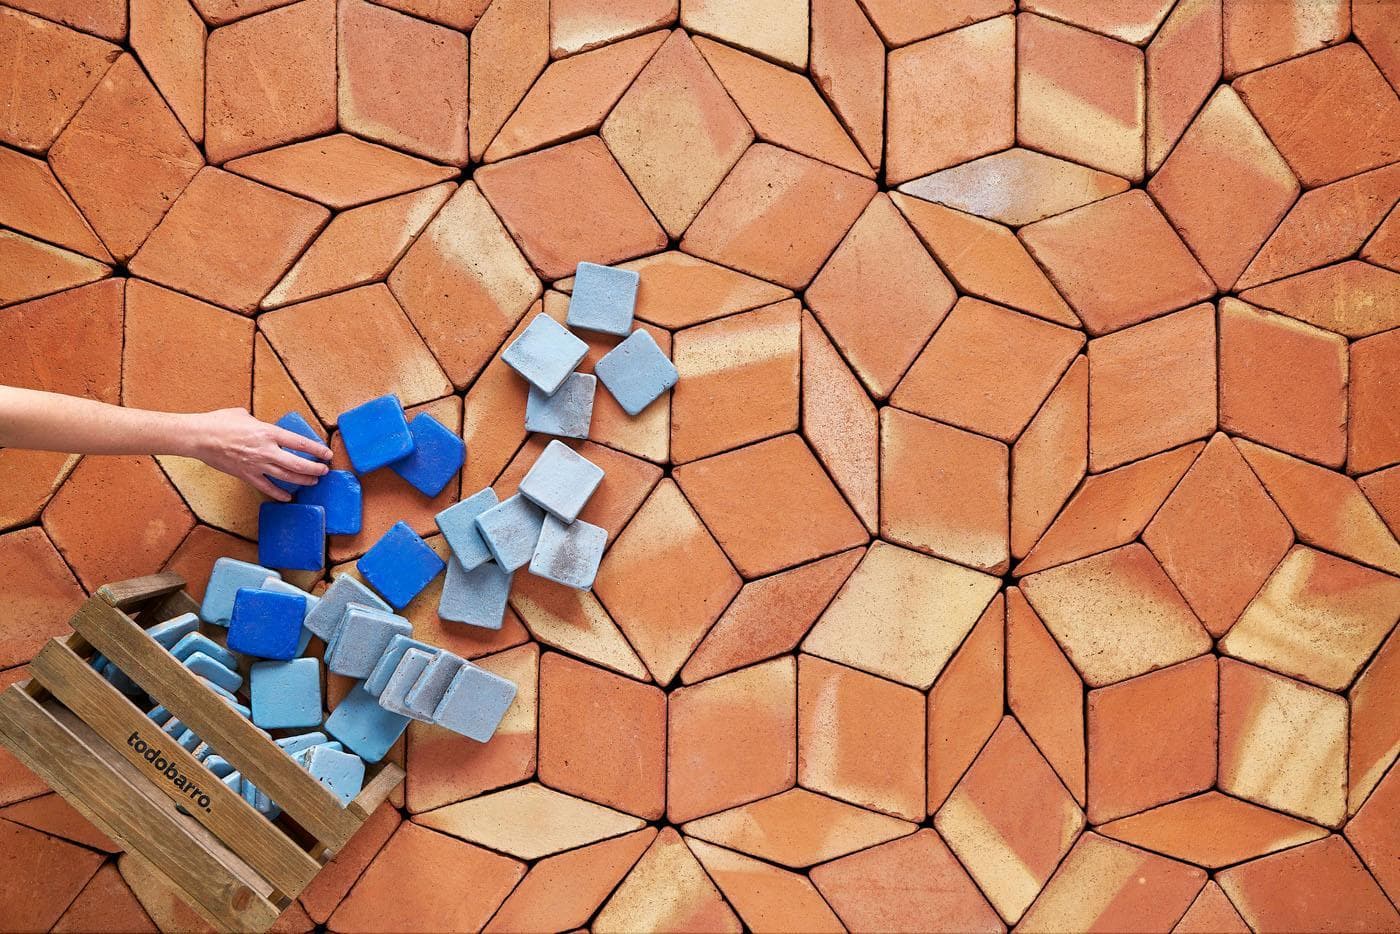 glazed ceramic tiles spilled over a terracotta floor